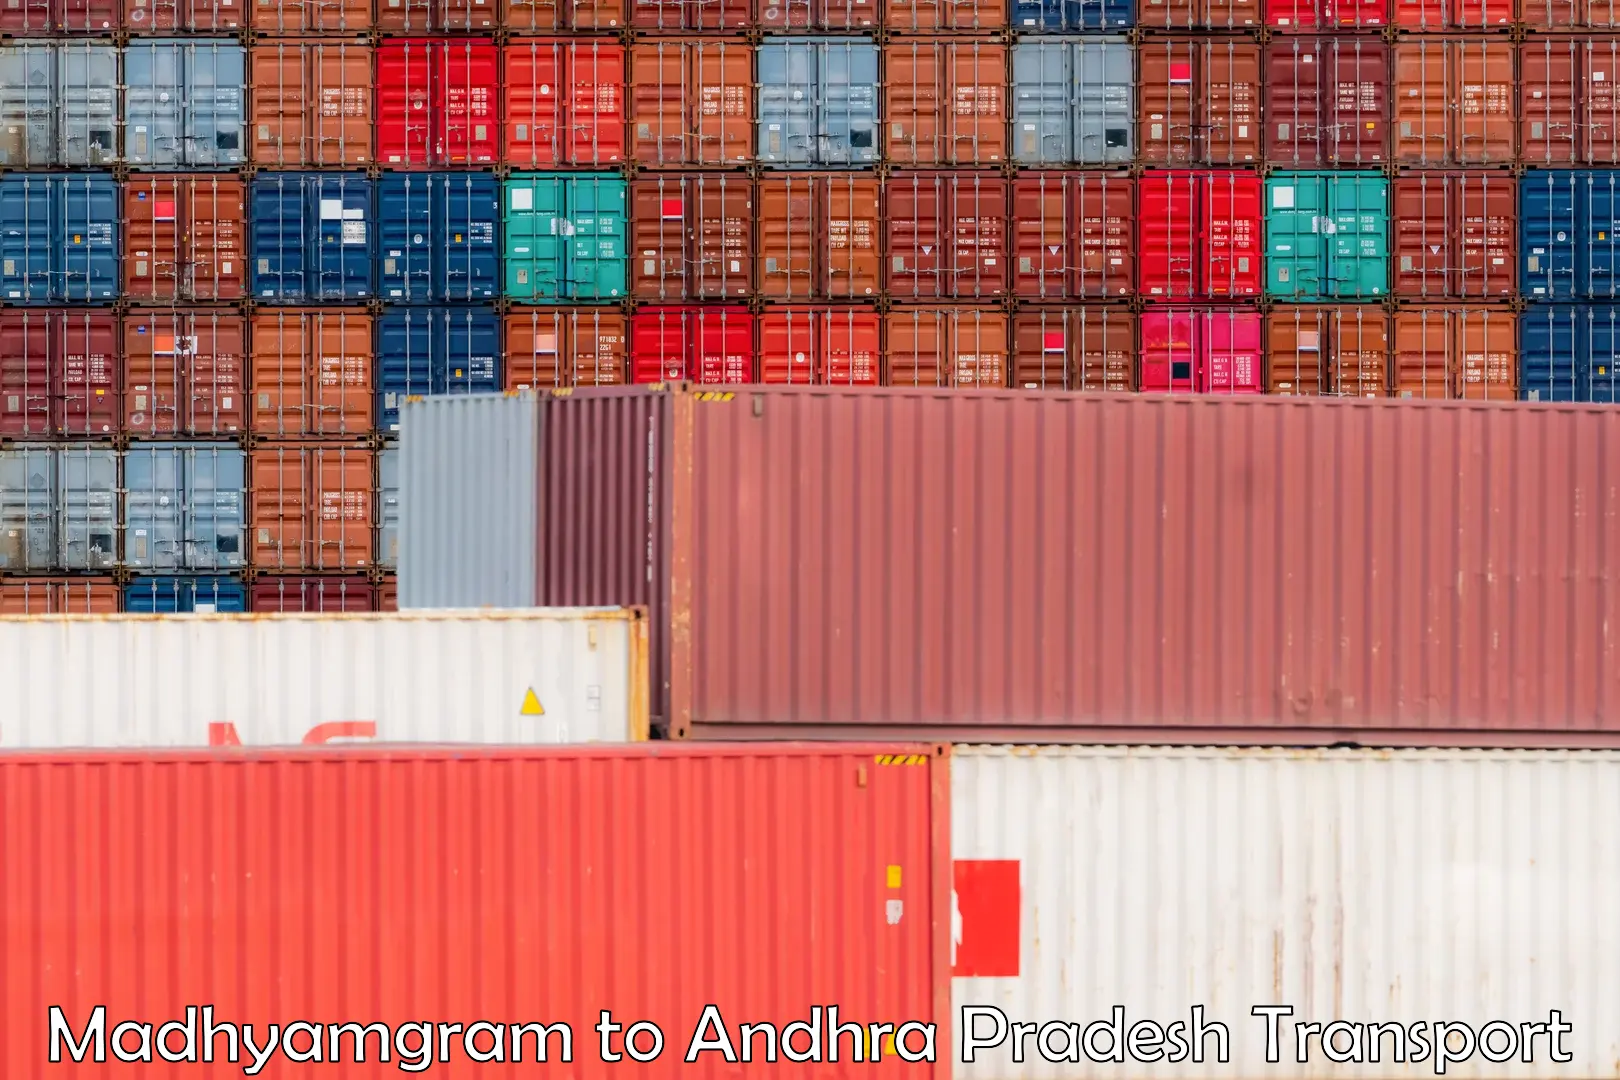 Truck transport companies in India Madhyamgram to Amarapuram